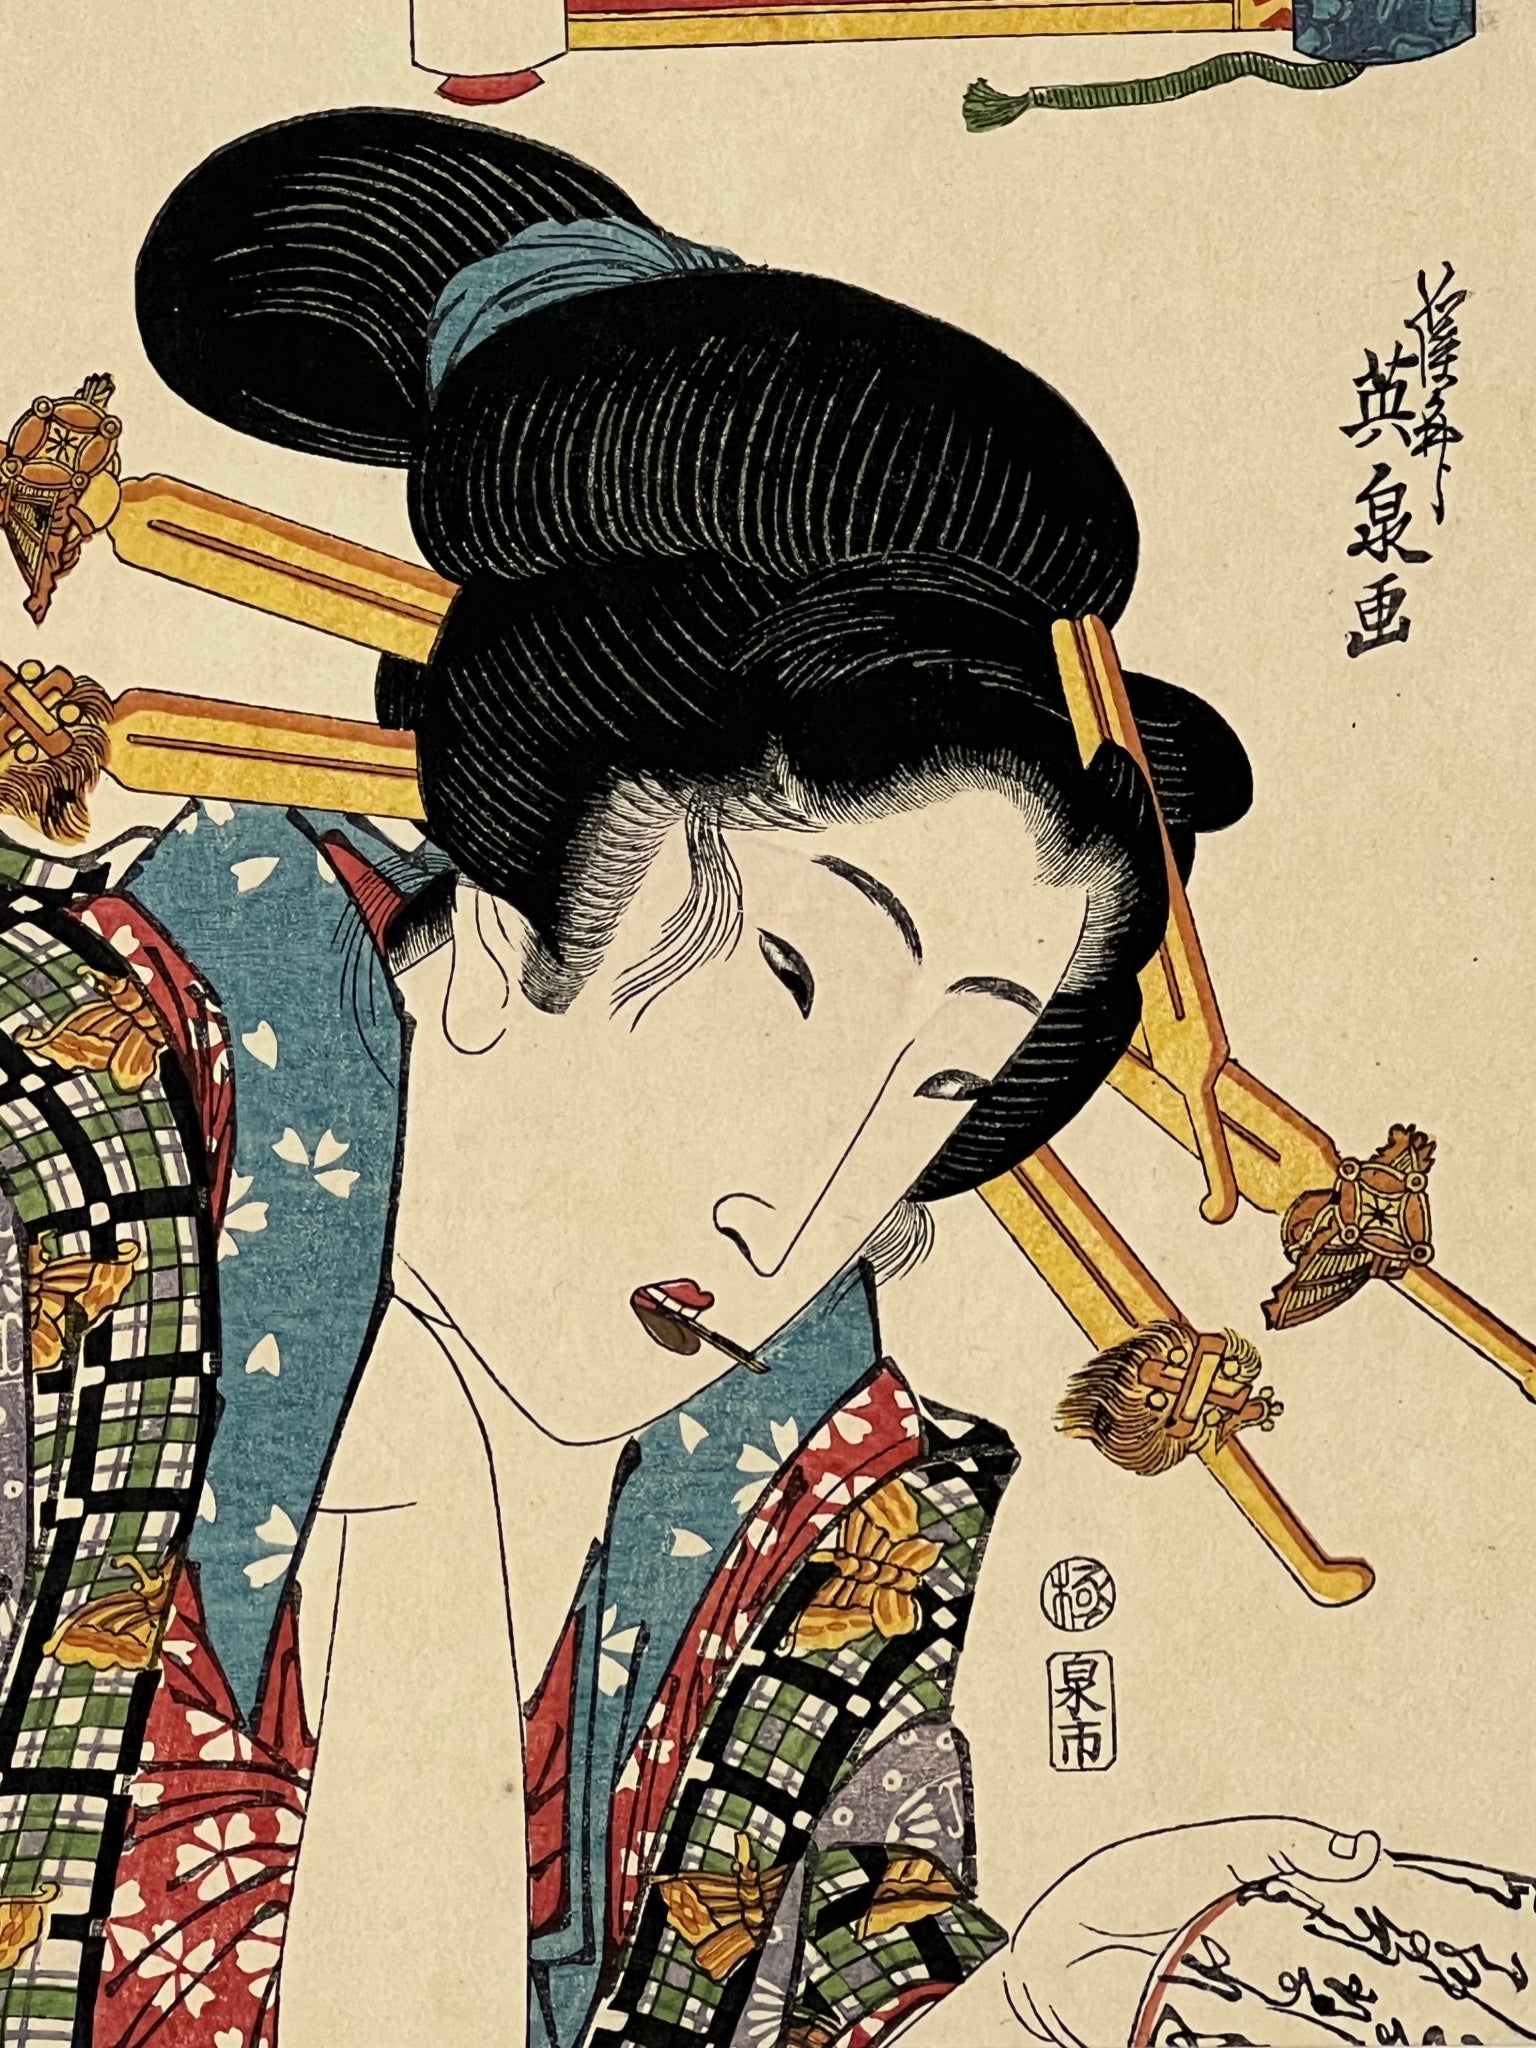 estampe japonaise geisha avec longues épingles dans les cheveux, dans un cartouche le quartier du Yoshiwara, gros plan sur le visage